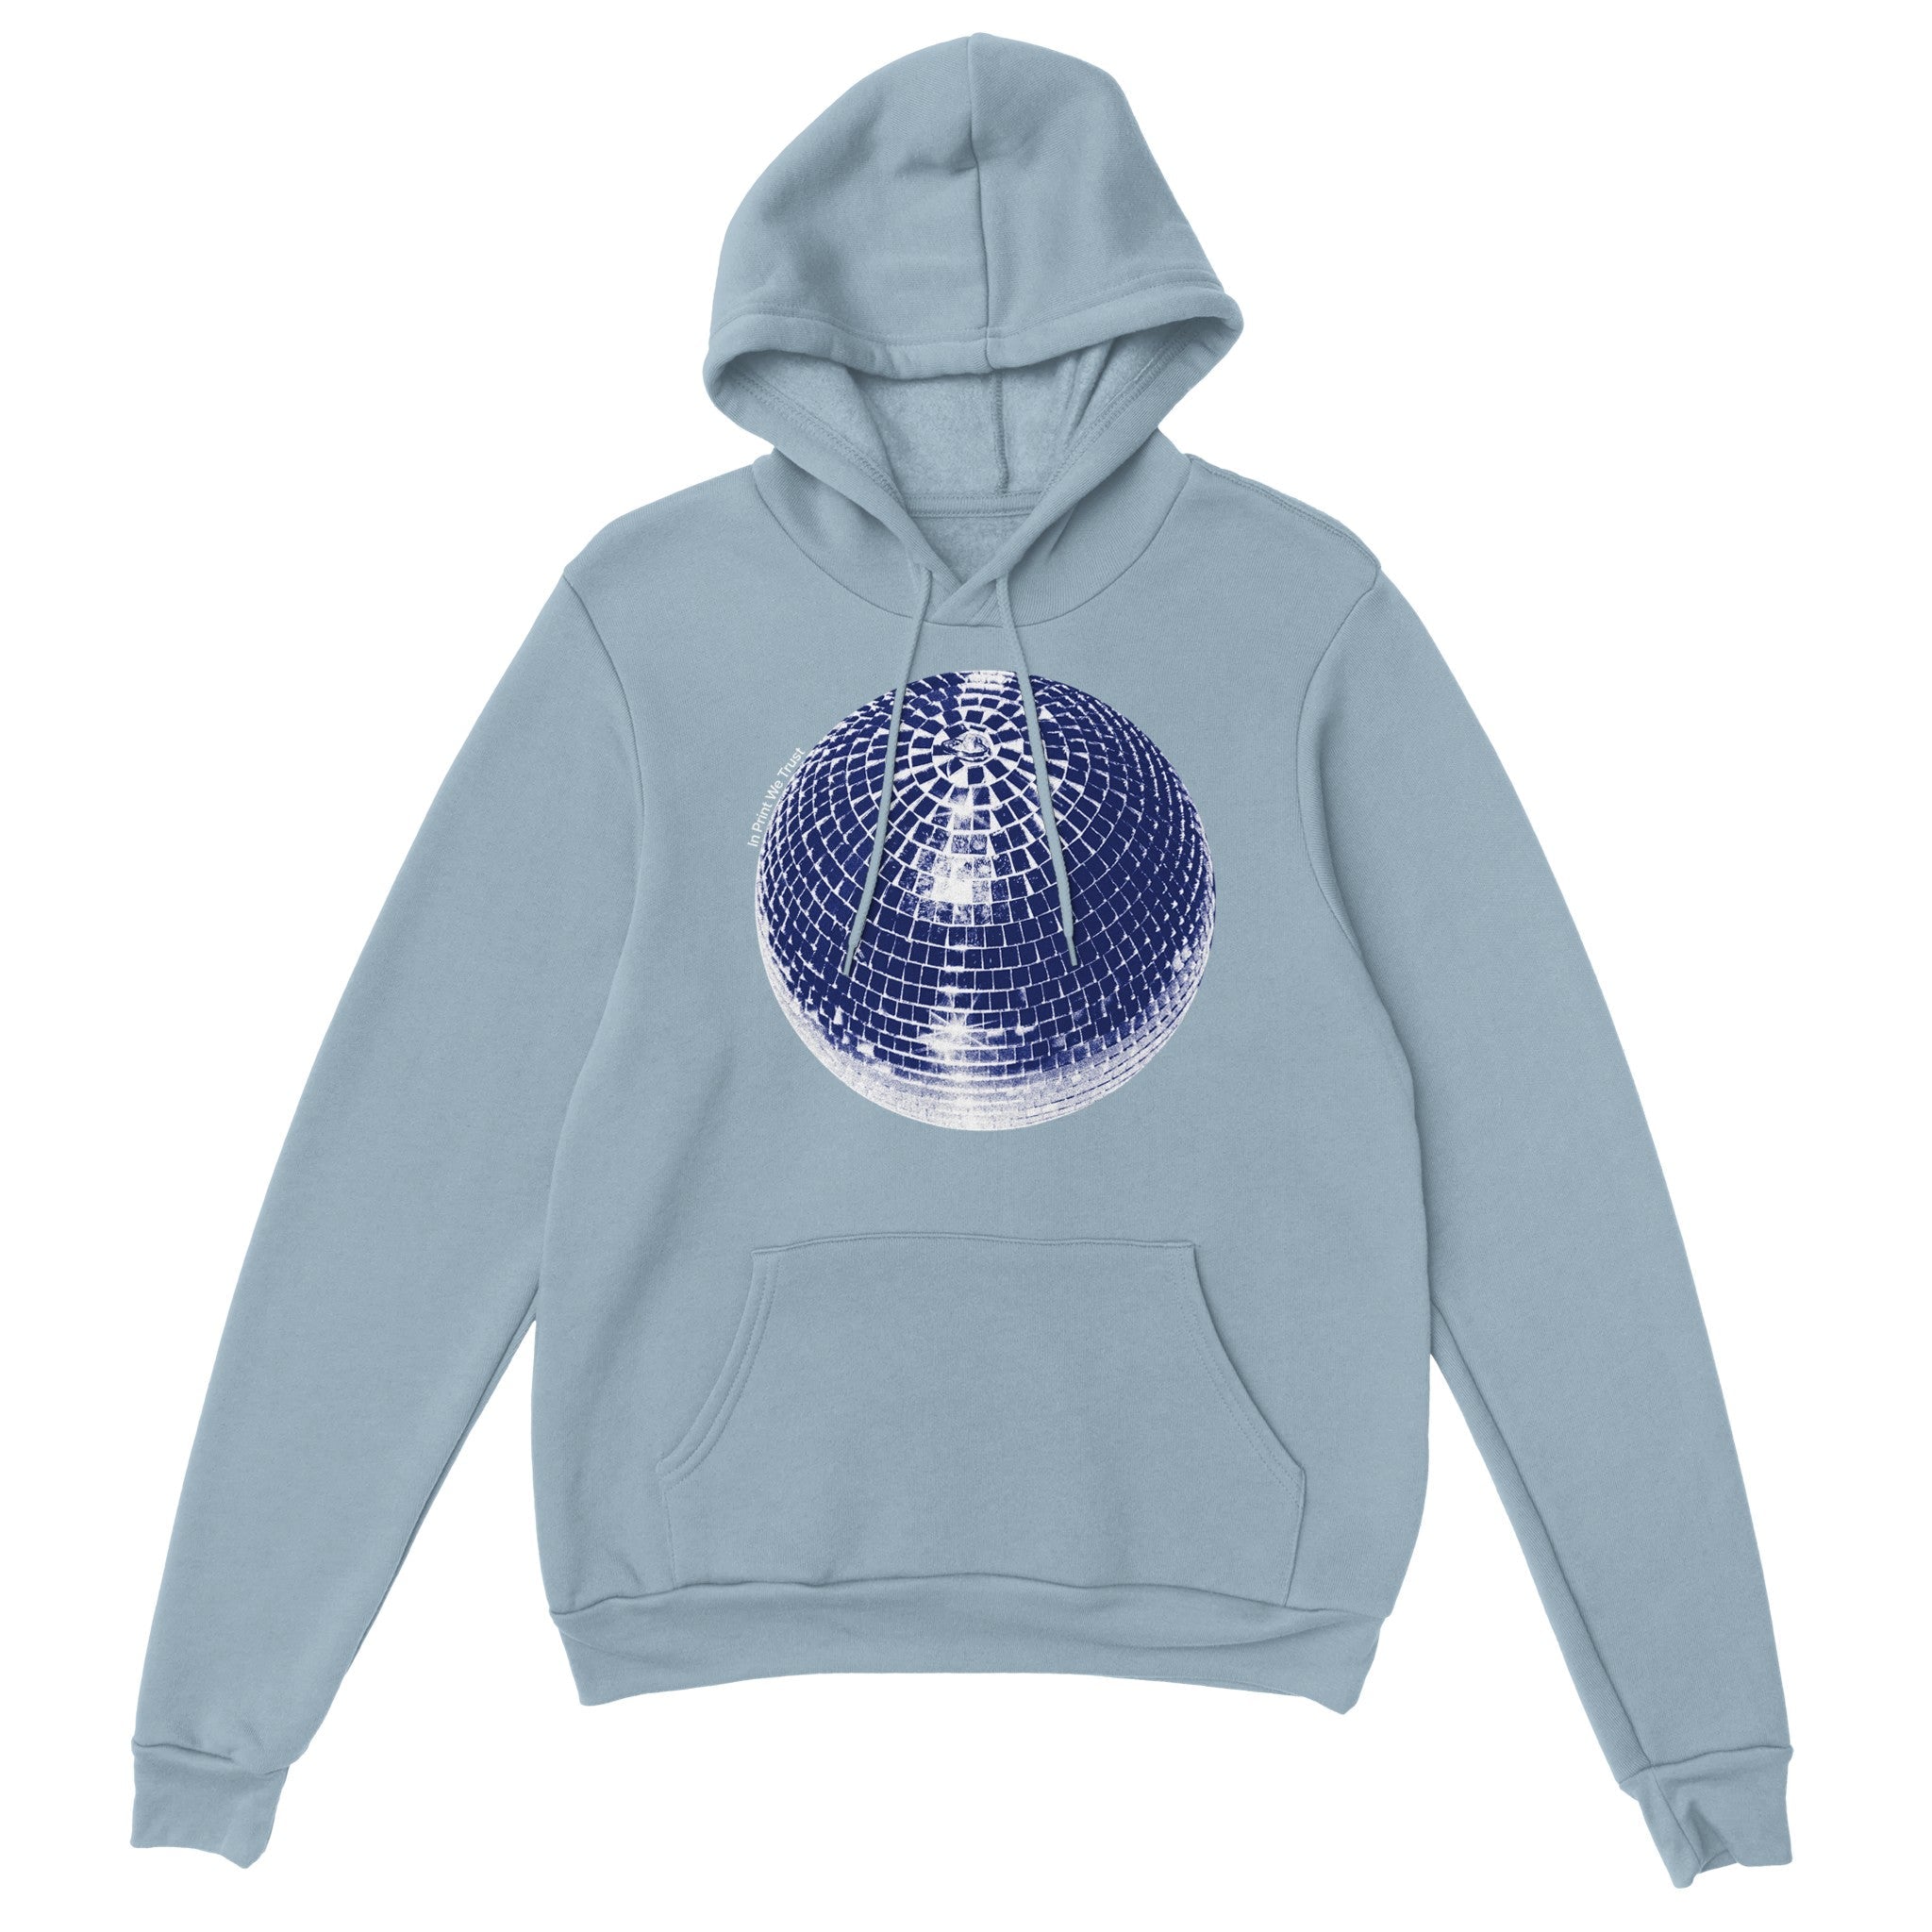 'Studio 54' hoodie - In Print We Trust